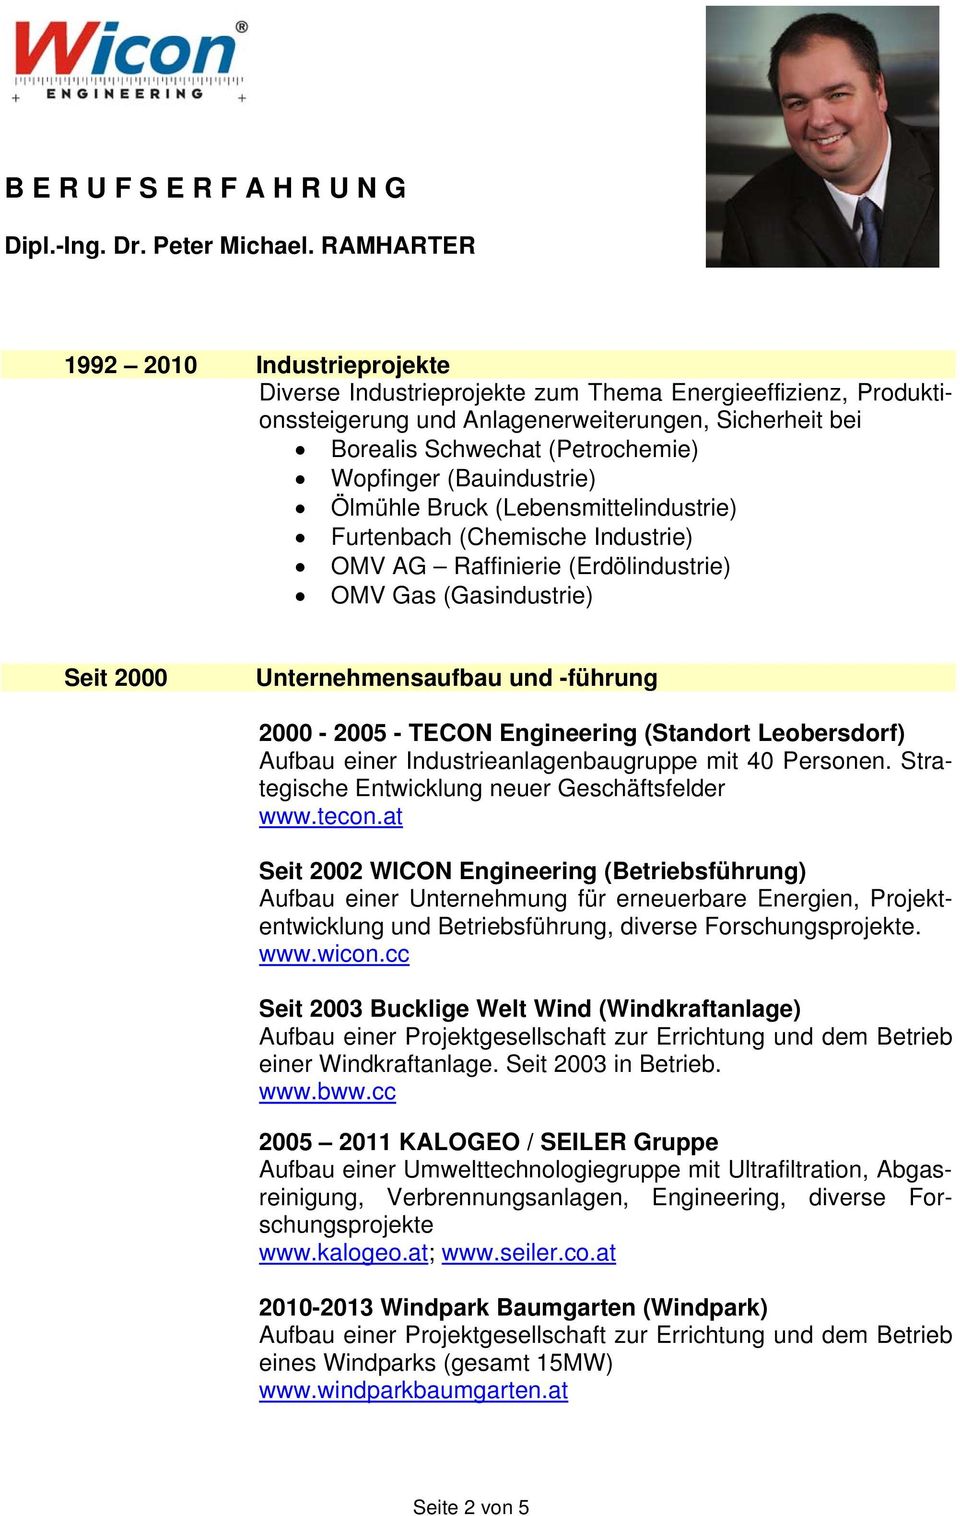 TECON Engineering (Standort Leobersdorf) Aufbau einer Industrieanlagenbaugruppe mit 40 Personen. Strategische Entwicklung neuer Geschäftsfelder www.tecon.